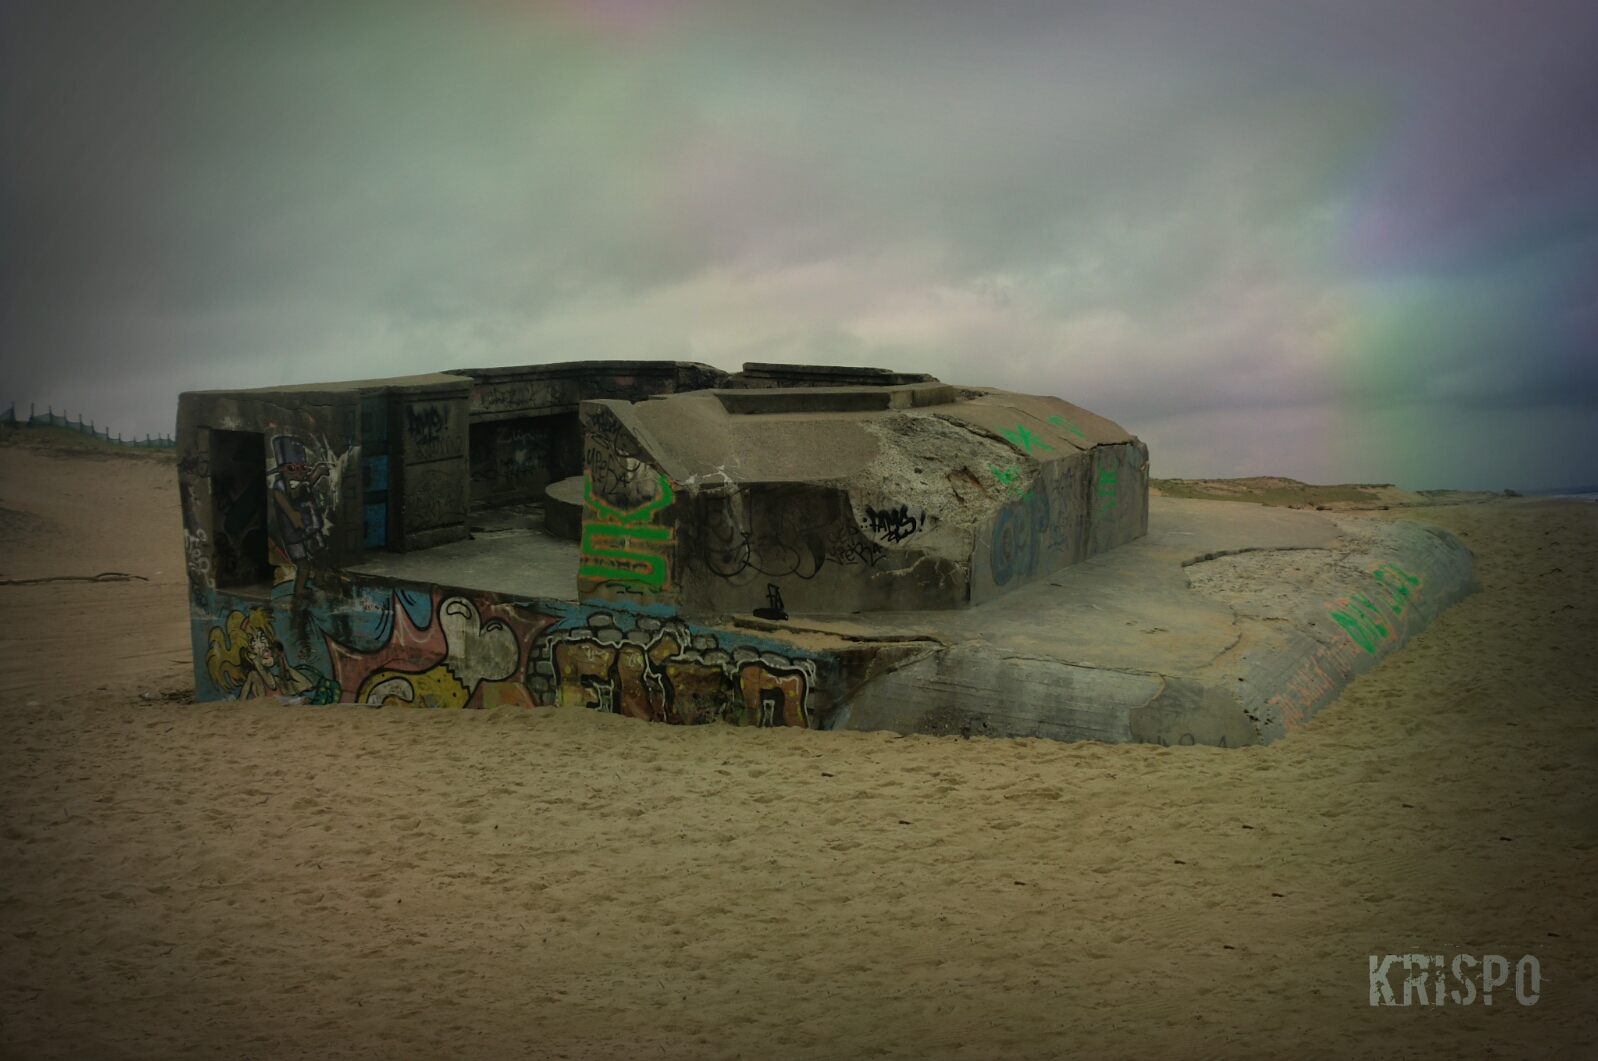 bunker semienterrado pintado con graffitis en playa de las landas